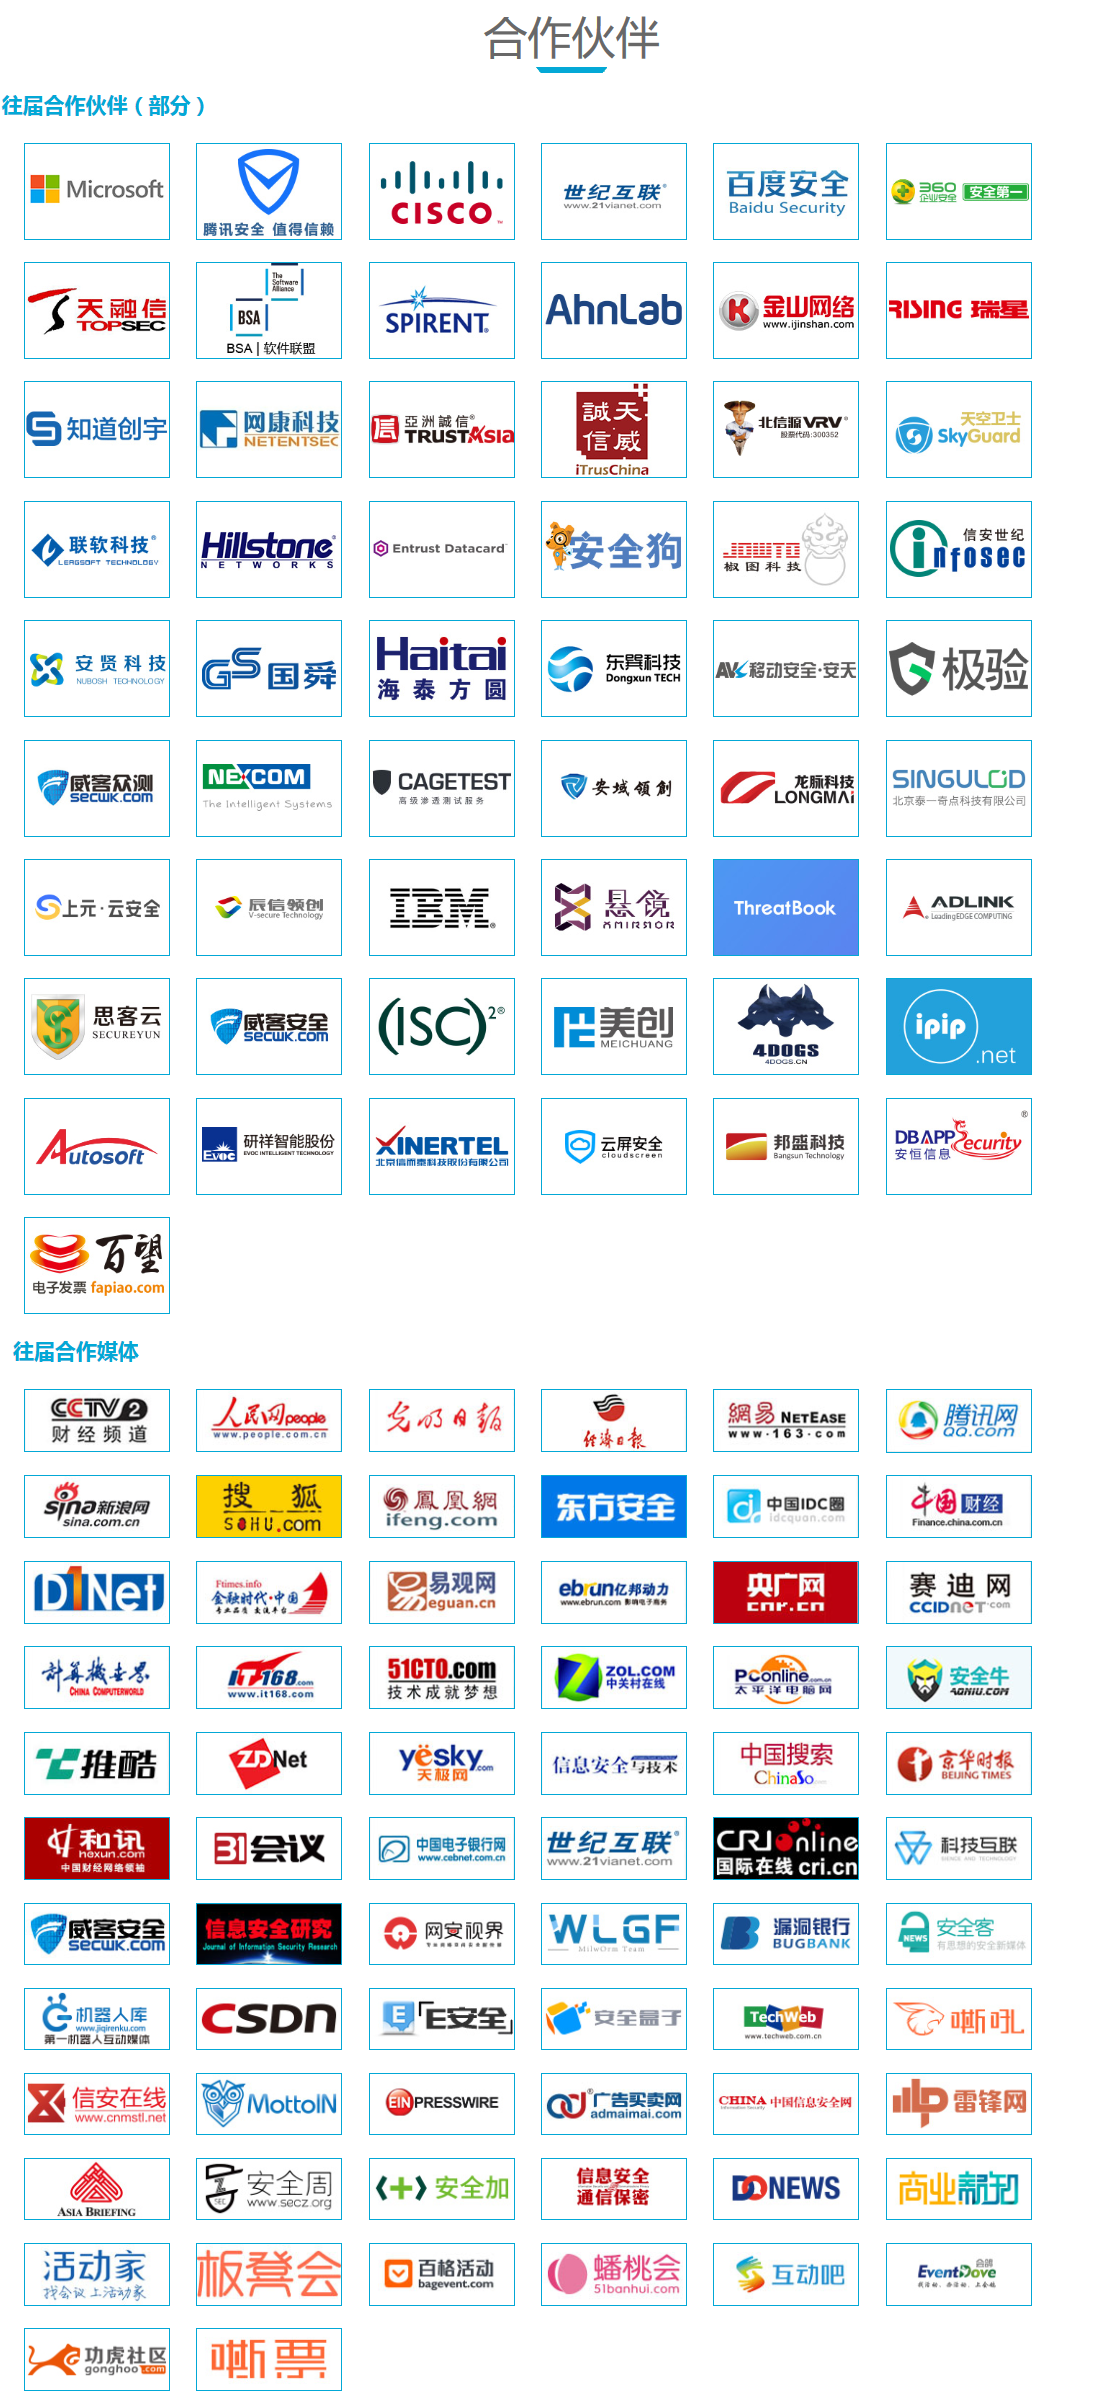 第六届中国网络安全大会（NSC 2018）